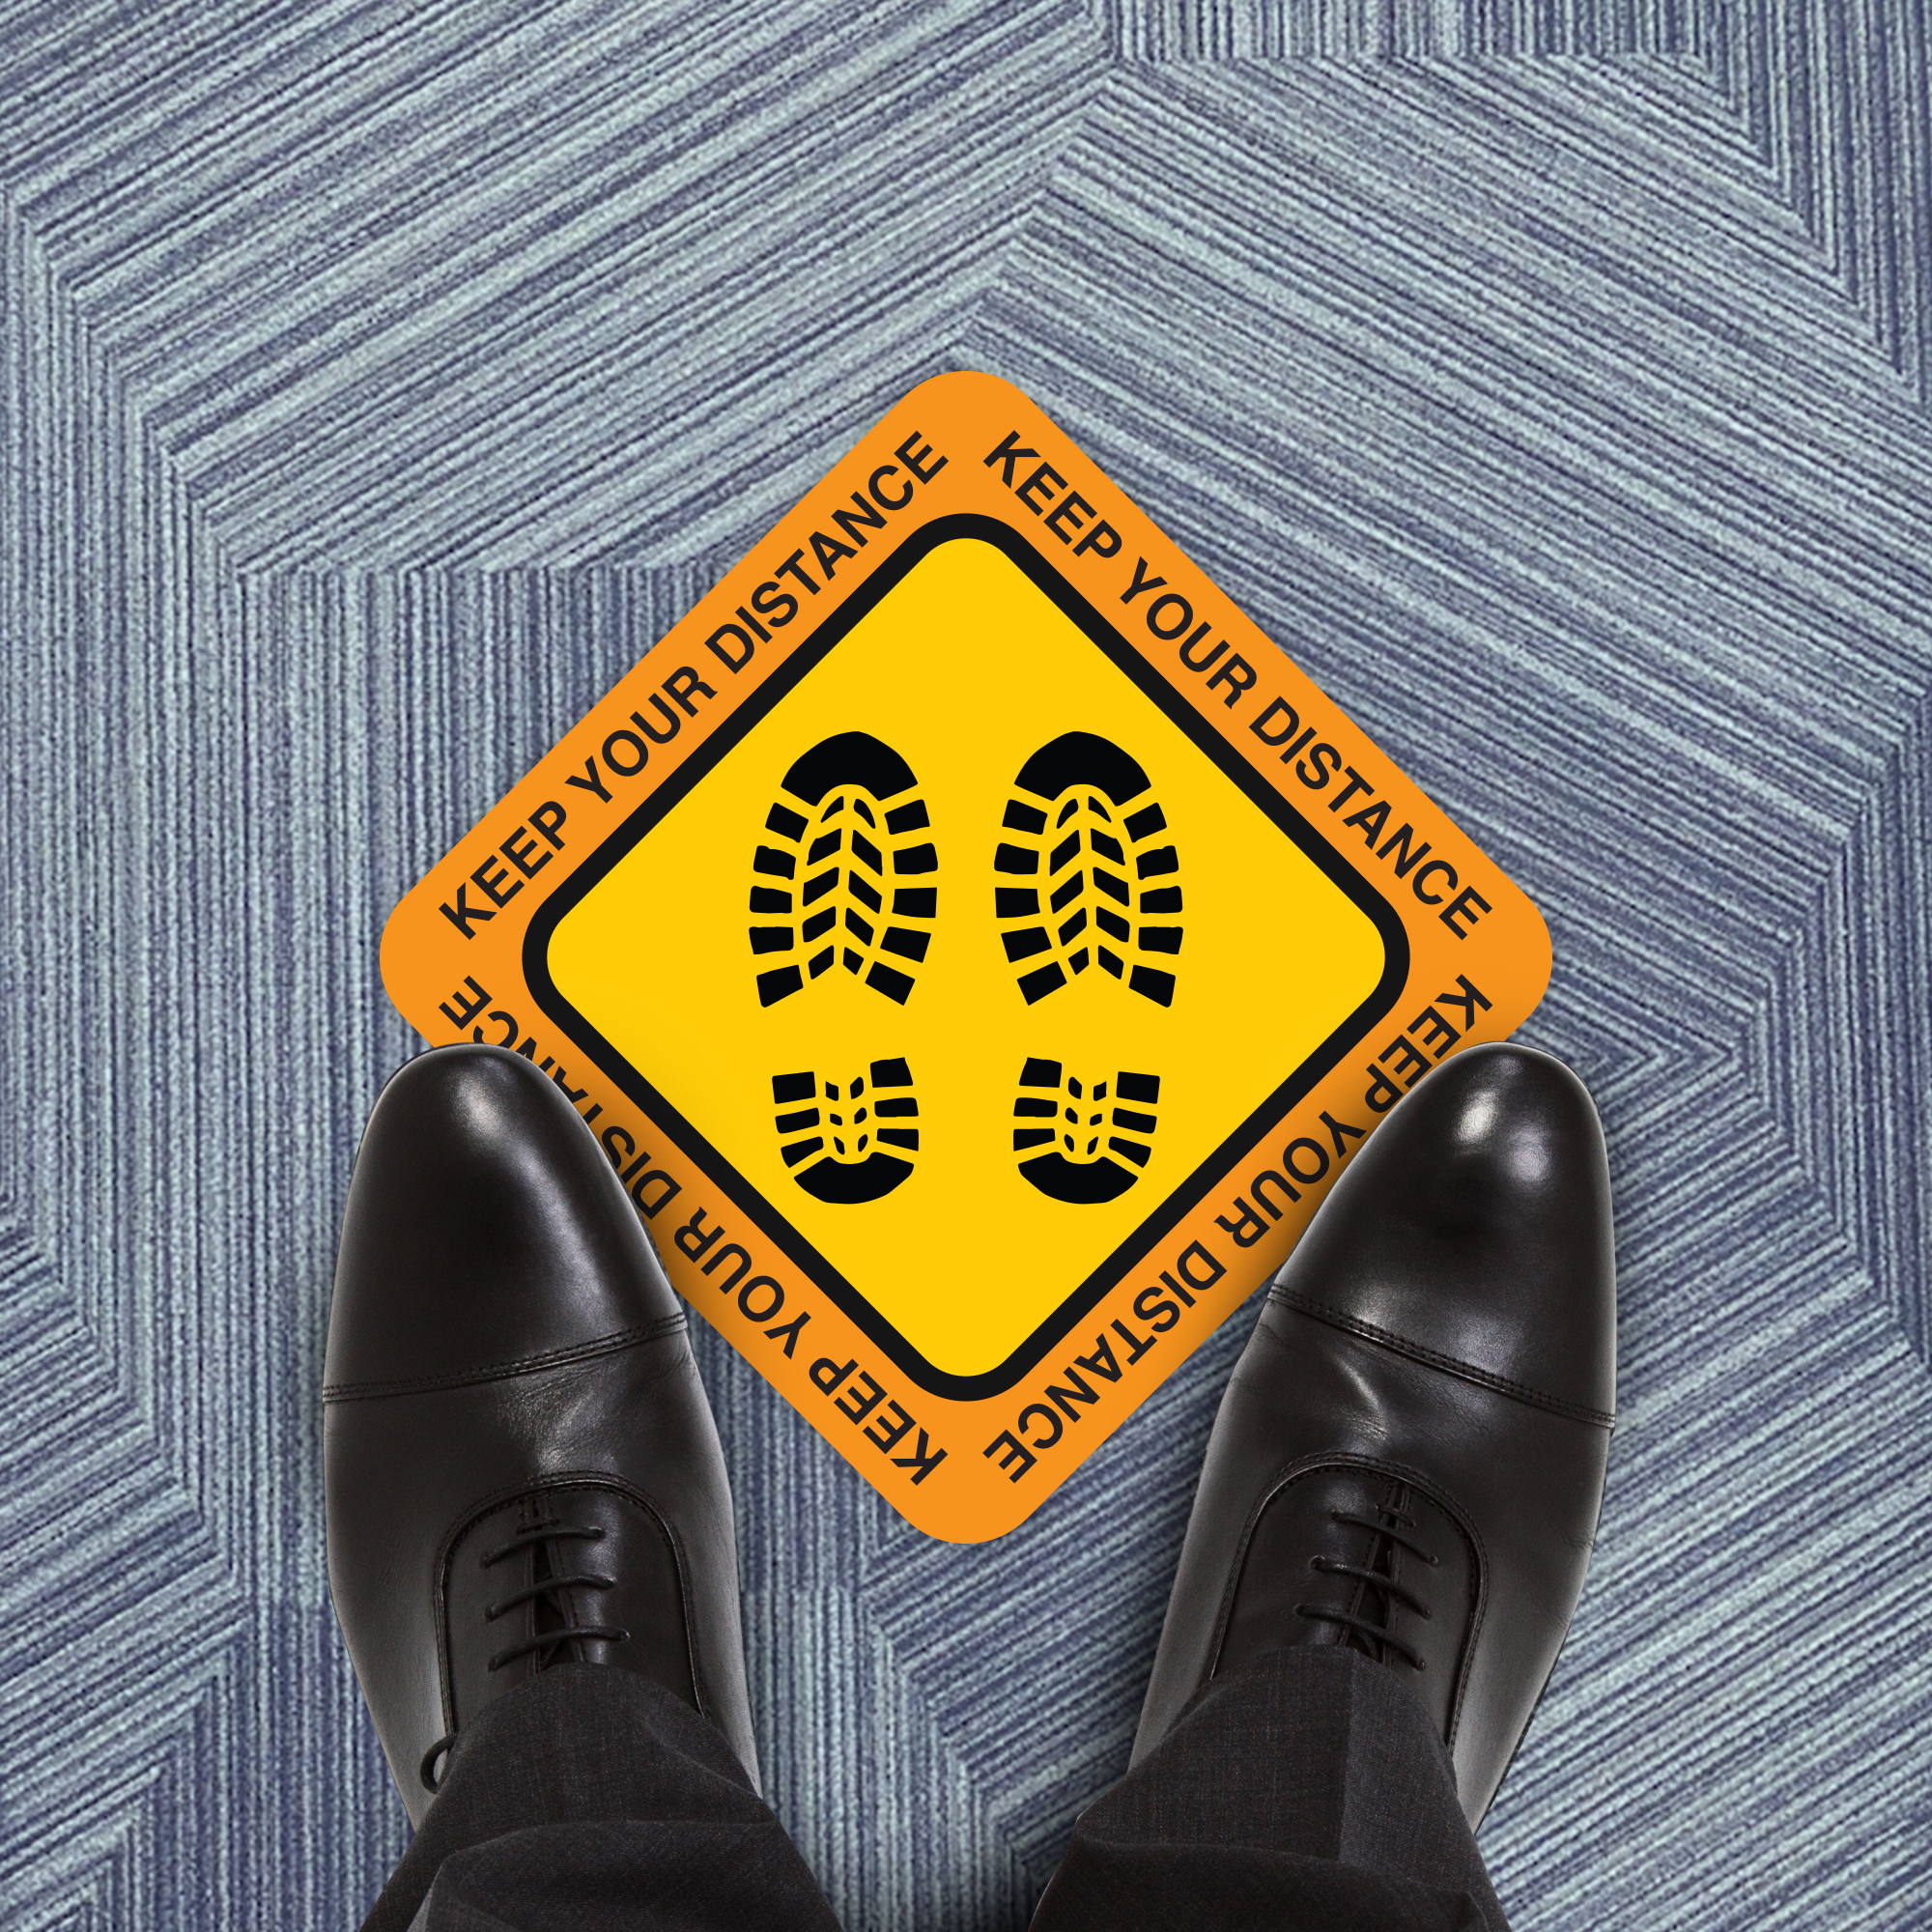 Keep Your Distance Hazard Floor Decal - 23 inch